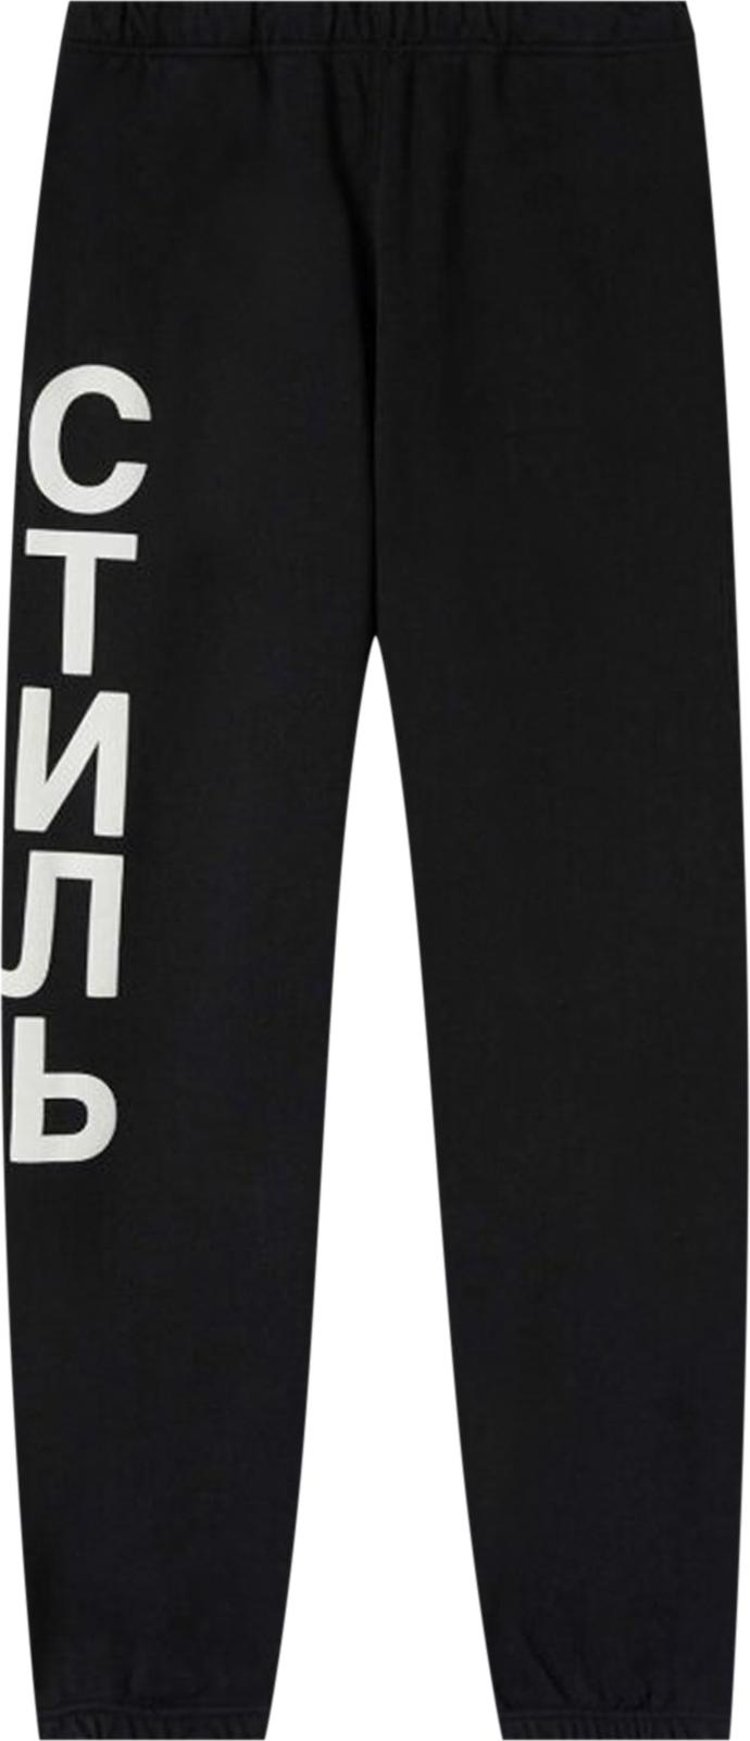 Спортивные брюки Heron Preston CTNMB Sweatpants 'Black/White', черный